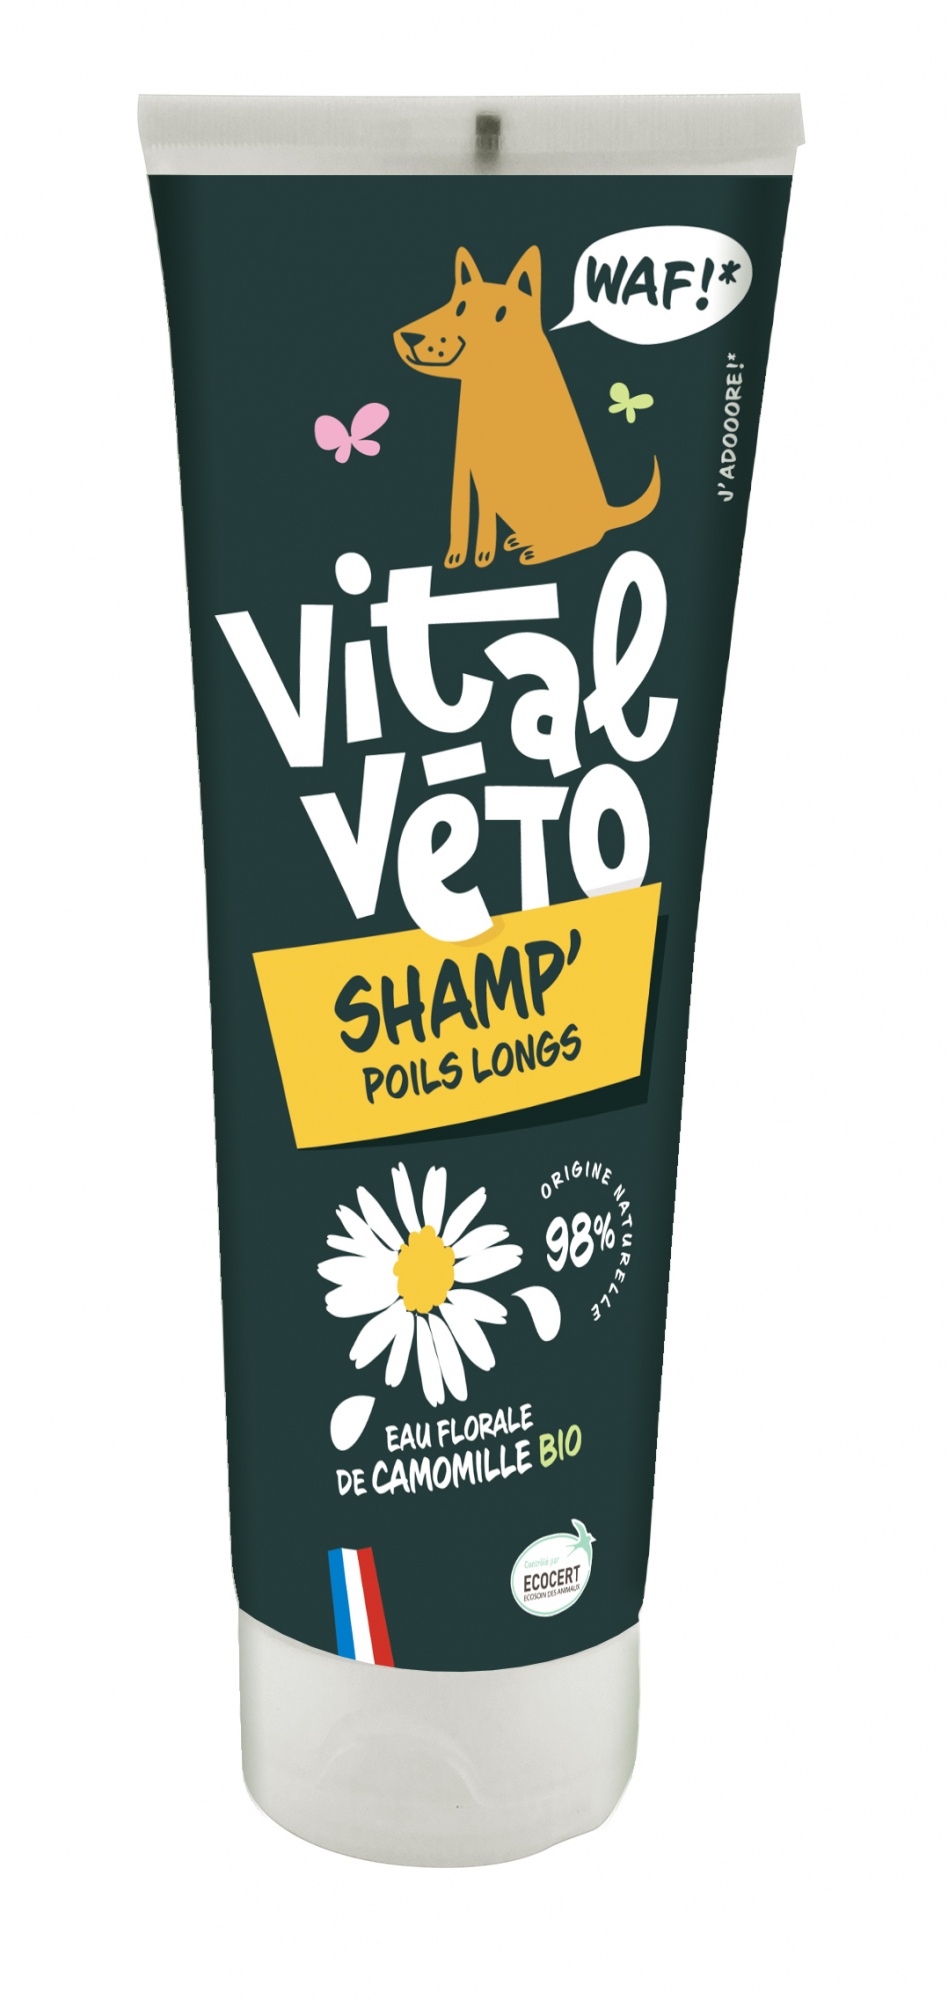 Vitalveto shampoing pour chien à poils long